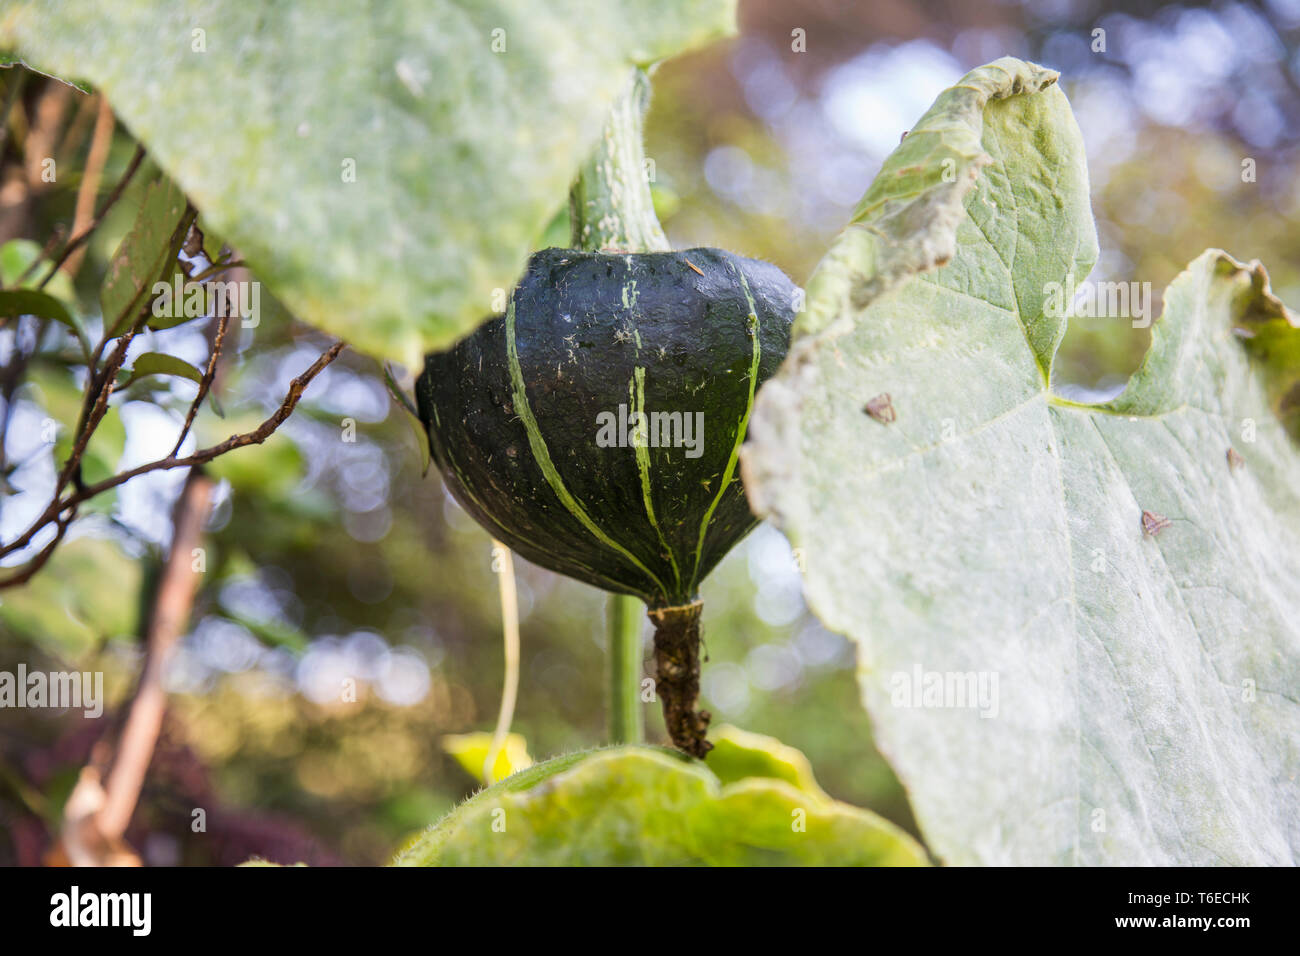 Chiudere la vista di un verde scuro buttercup squash che ha insinuato il suo modo dal giardino ad essere appeso ad un albero di molti metri di distanza per trovare il miglior sunshine. Foto Stock